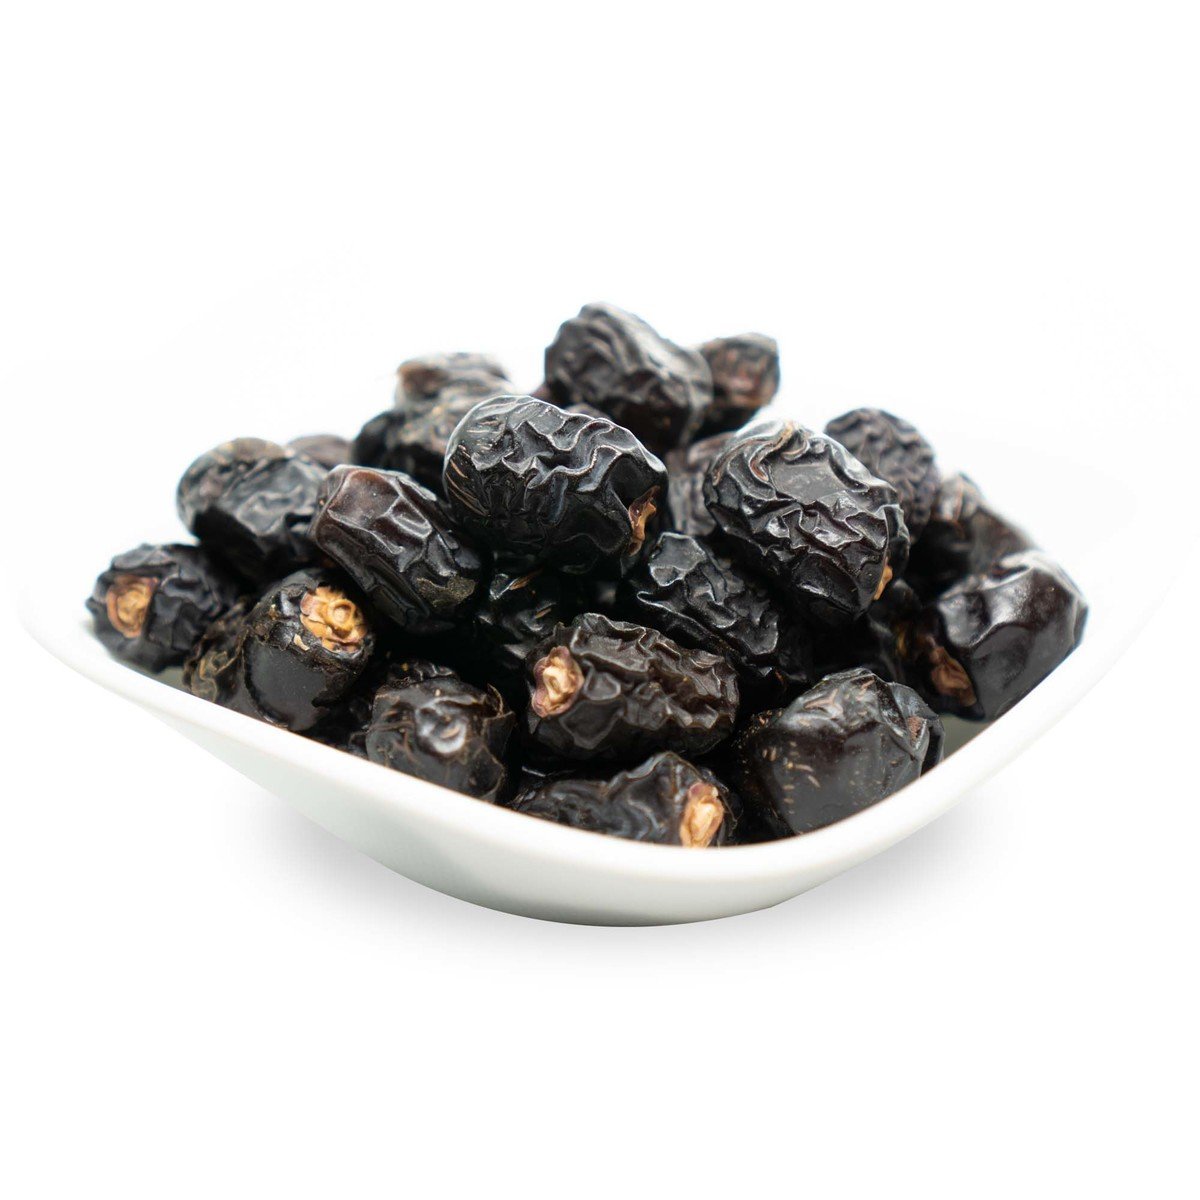 اشتري قم بشراء تمر عجوة المدينة 500 جم Online at Best Price من الموقع - من لولو هايبر ماركت Roastery Dried Fruit في السعودية